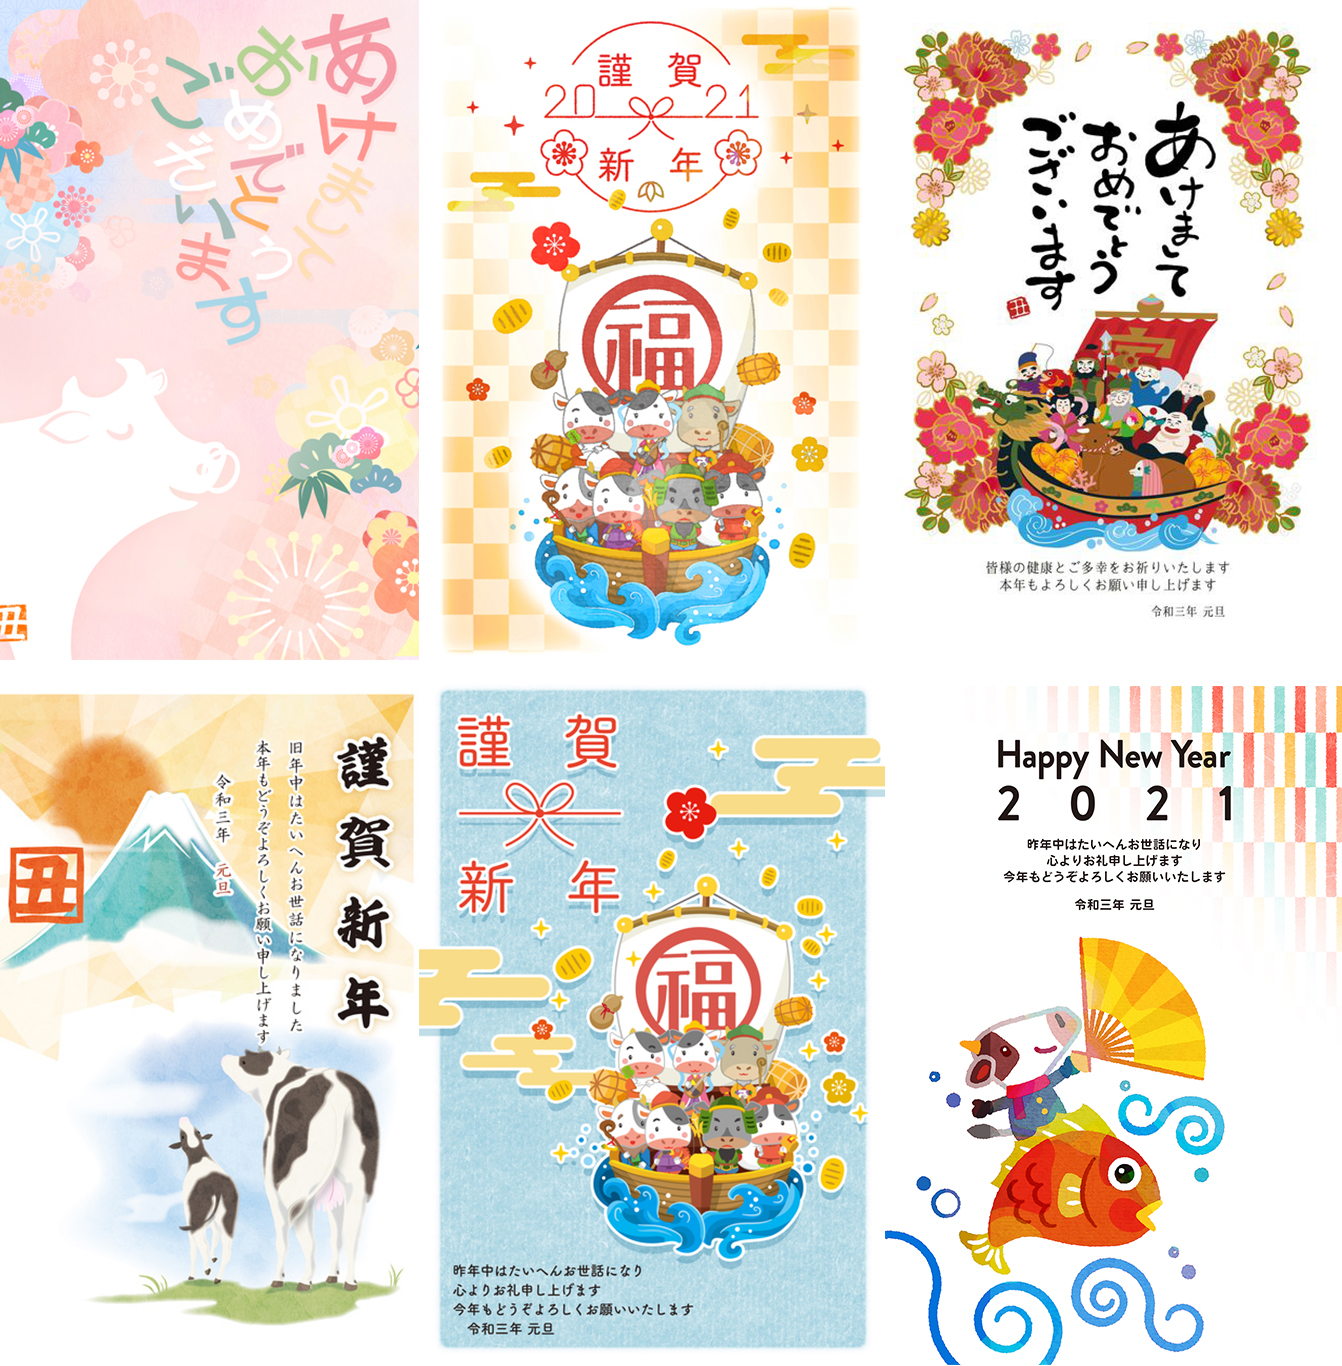 Nengajo là dịp để mọi người gửi lời chúc tốt đẹp đến nhau trong dịp năm mới tại Nhật Bản. Trong năm 2024, hãy cùng chiêm ngưỡng những mẫu thiệp Nengajo mới nhất với những hình ảnh tràn đầy sắc màu và ý nghĩa của người Nhật Bản.